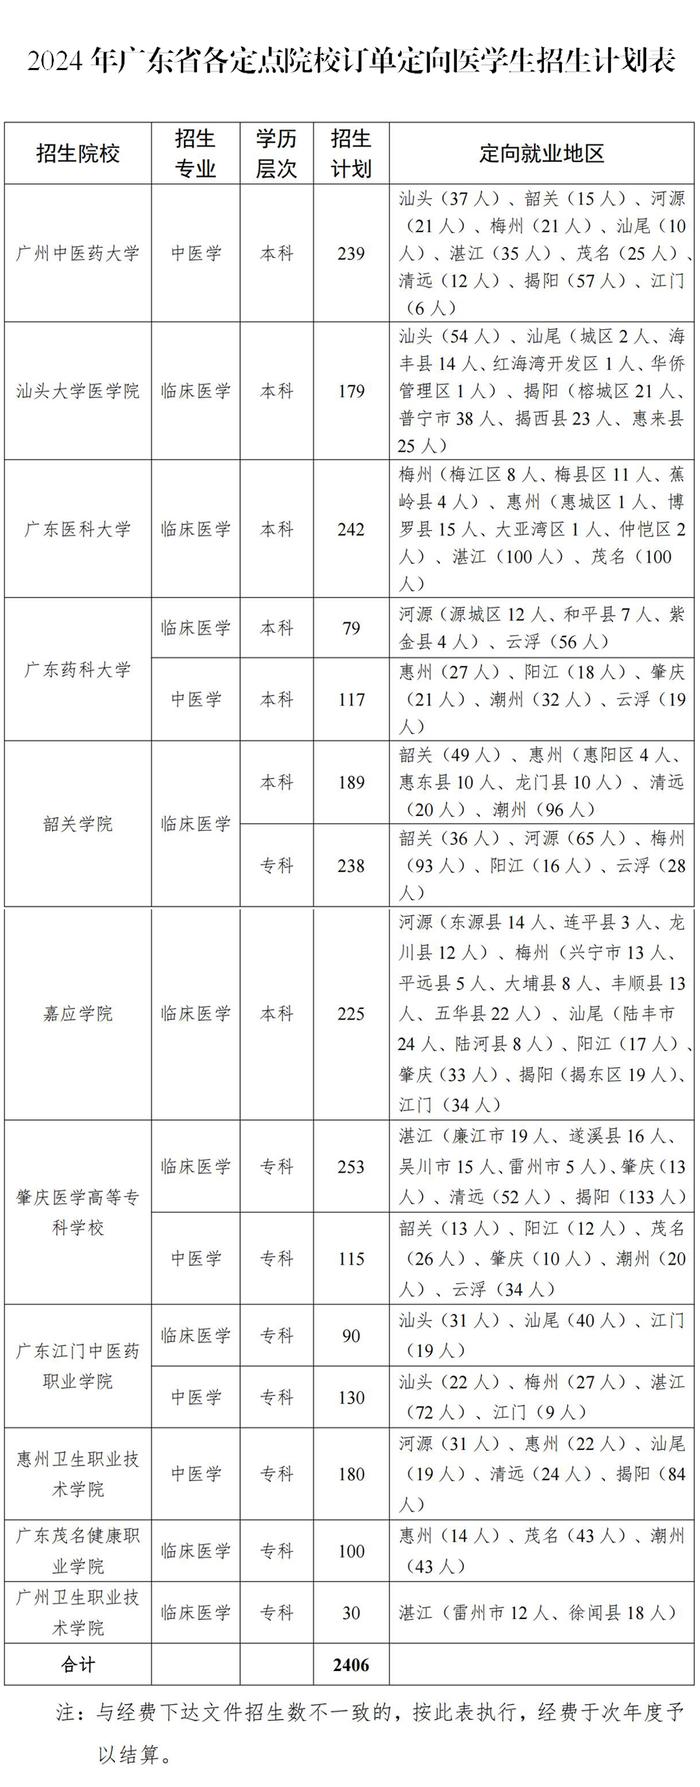 免学费、有编制！今年广东订单定向培养医学生拟招2406名